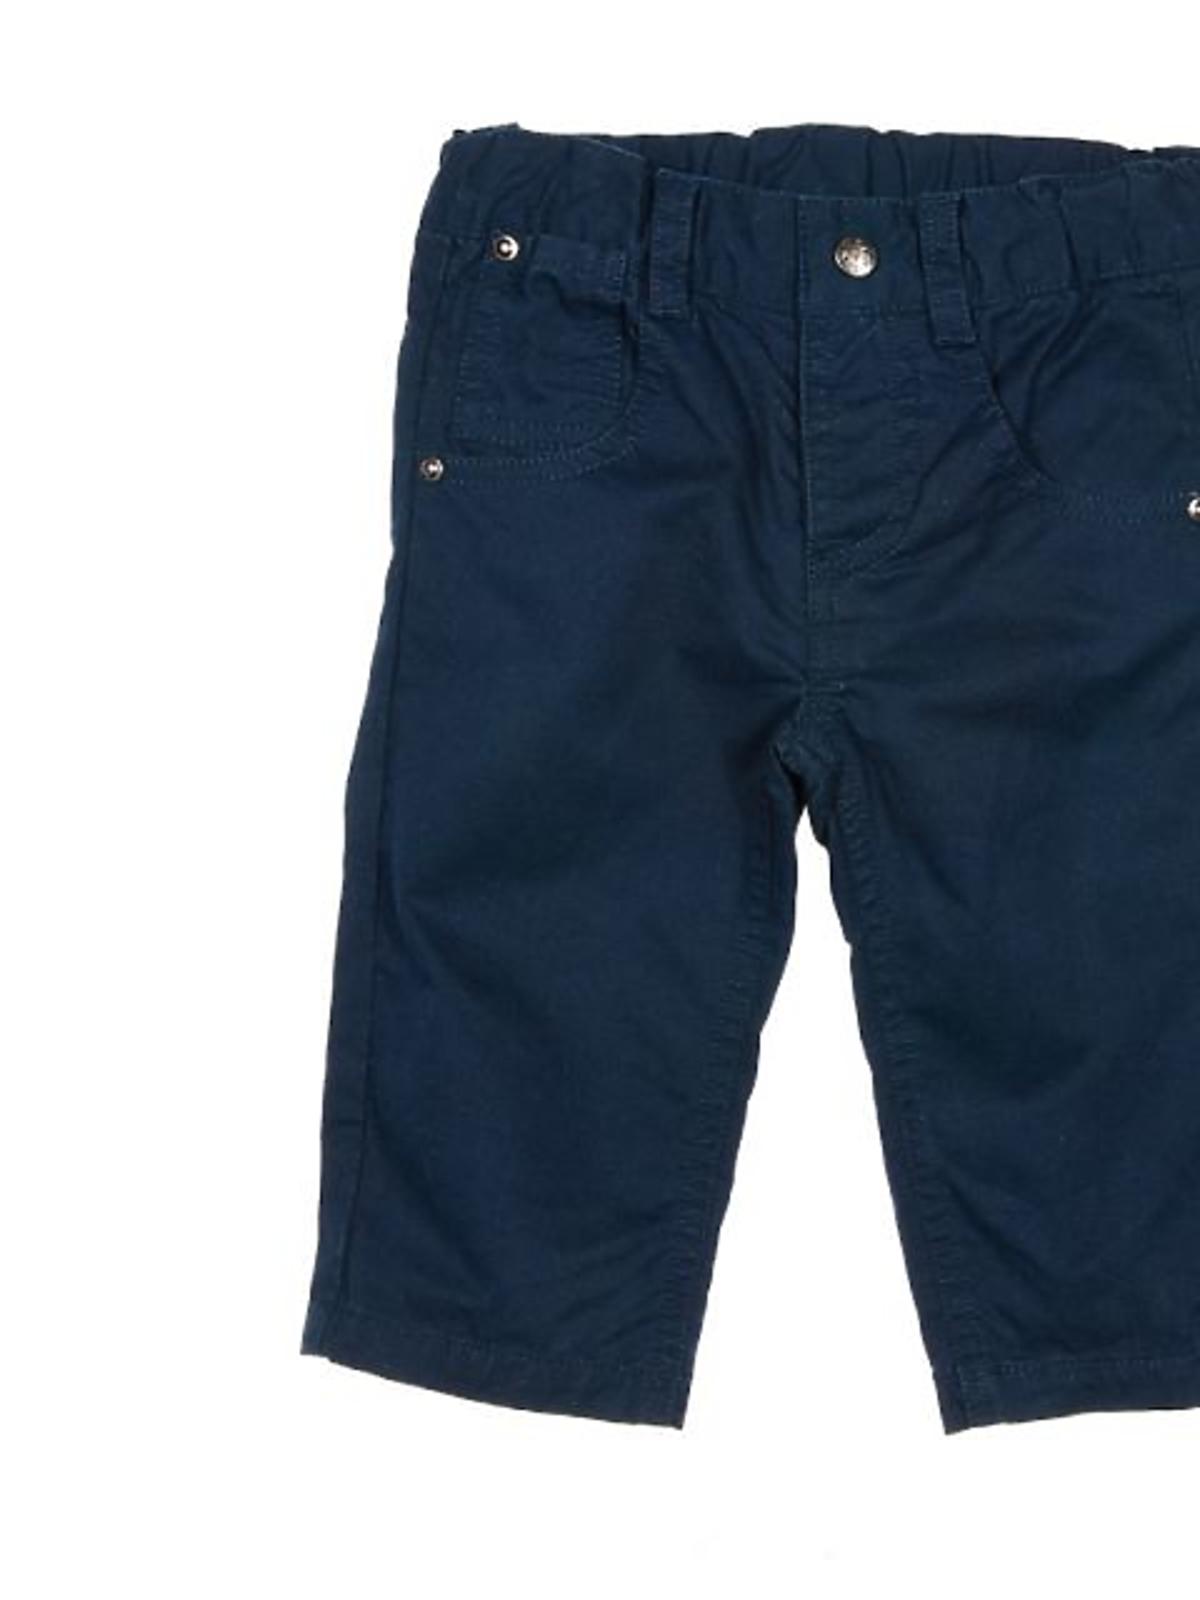 spodnie-dla-niemowlaka_-cena-49,99zl.jpg